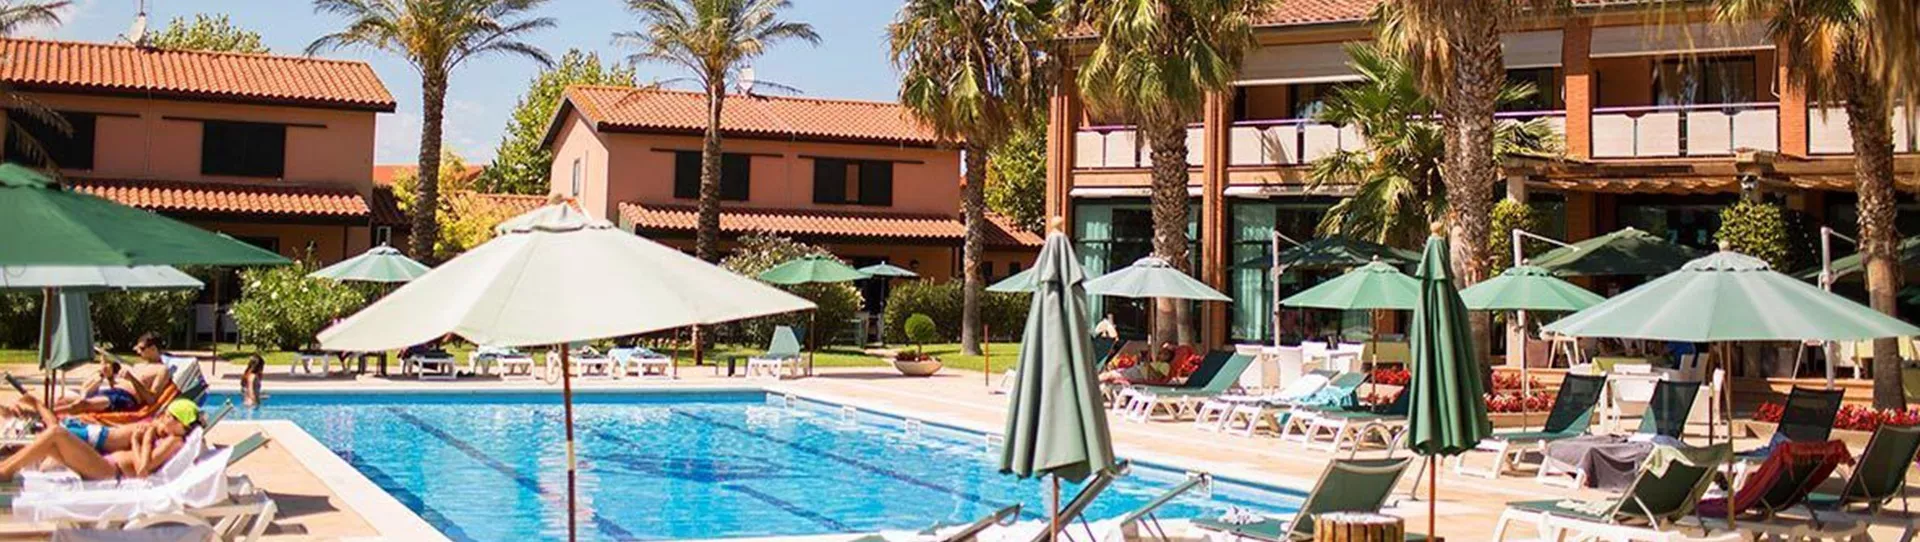 Spain golf holidays - Hotel Clipper & Villas - Photo 1